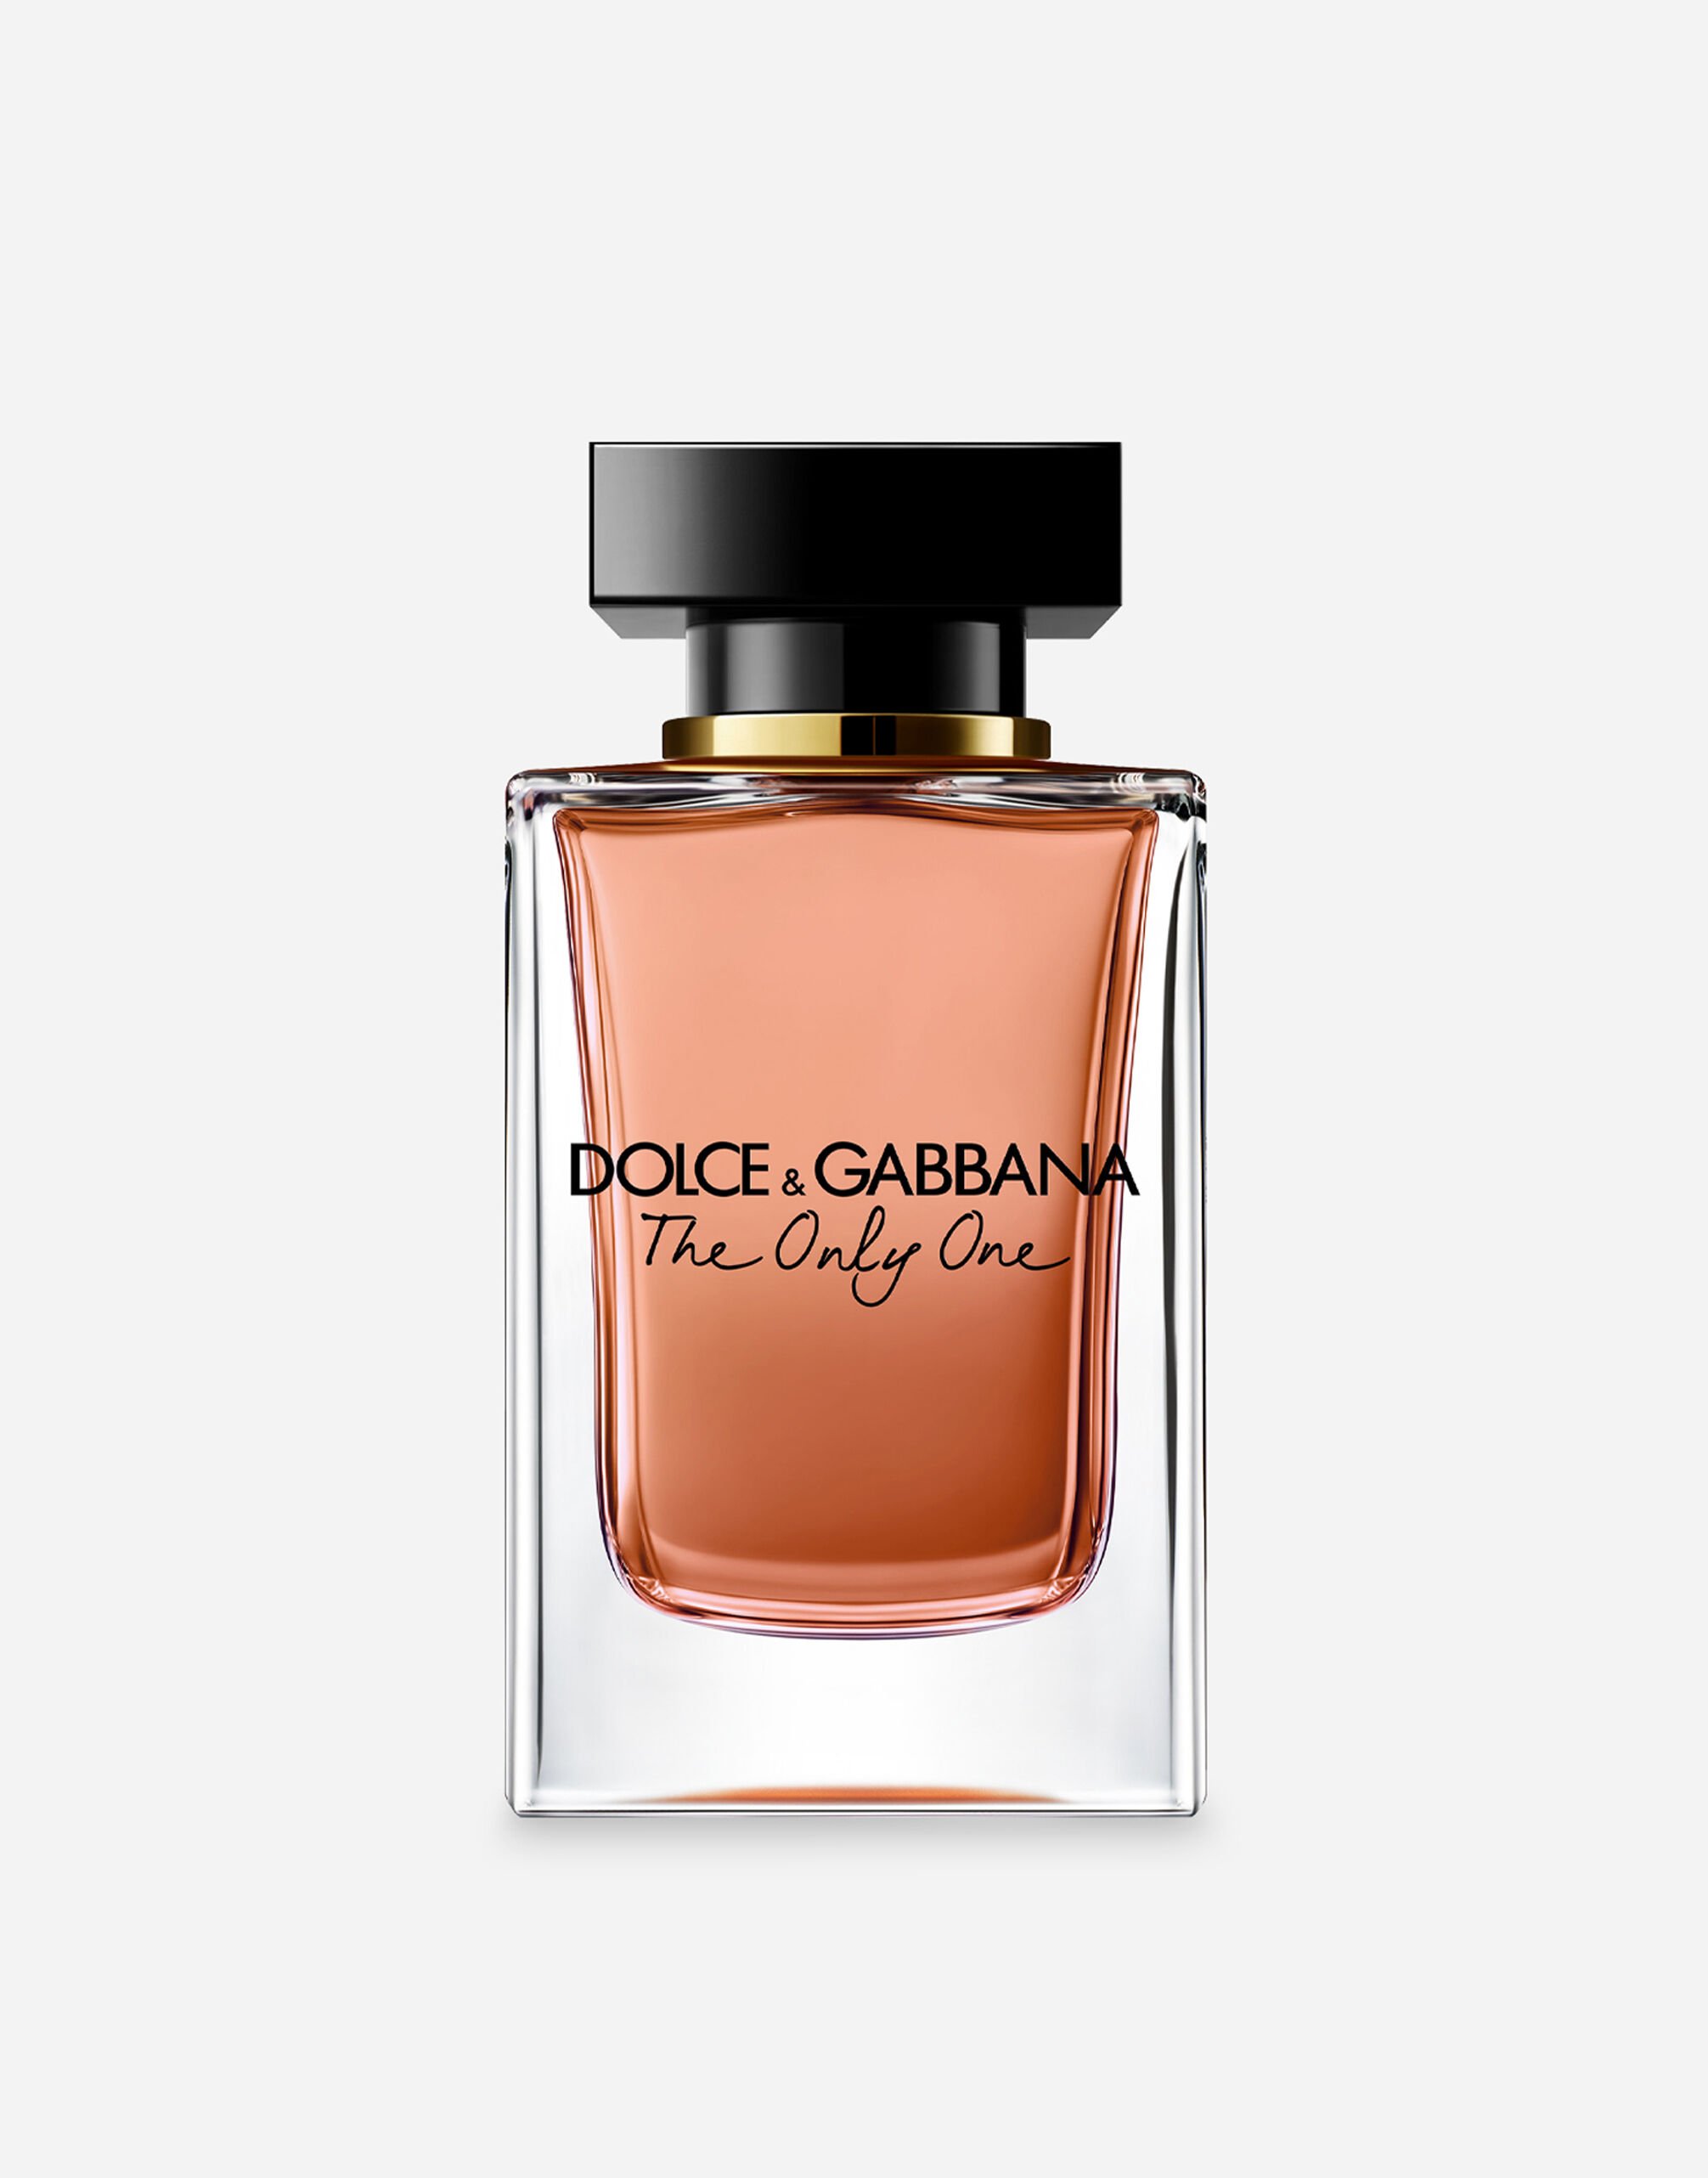 Dolce & Gabbana The Only One Eau de Parfum - VT0063VT000